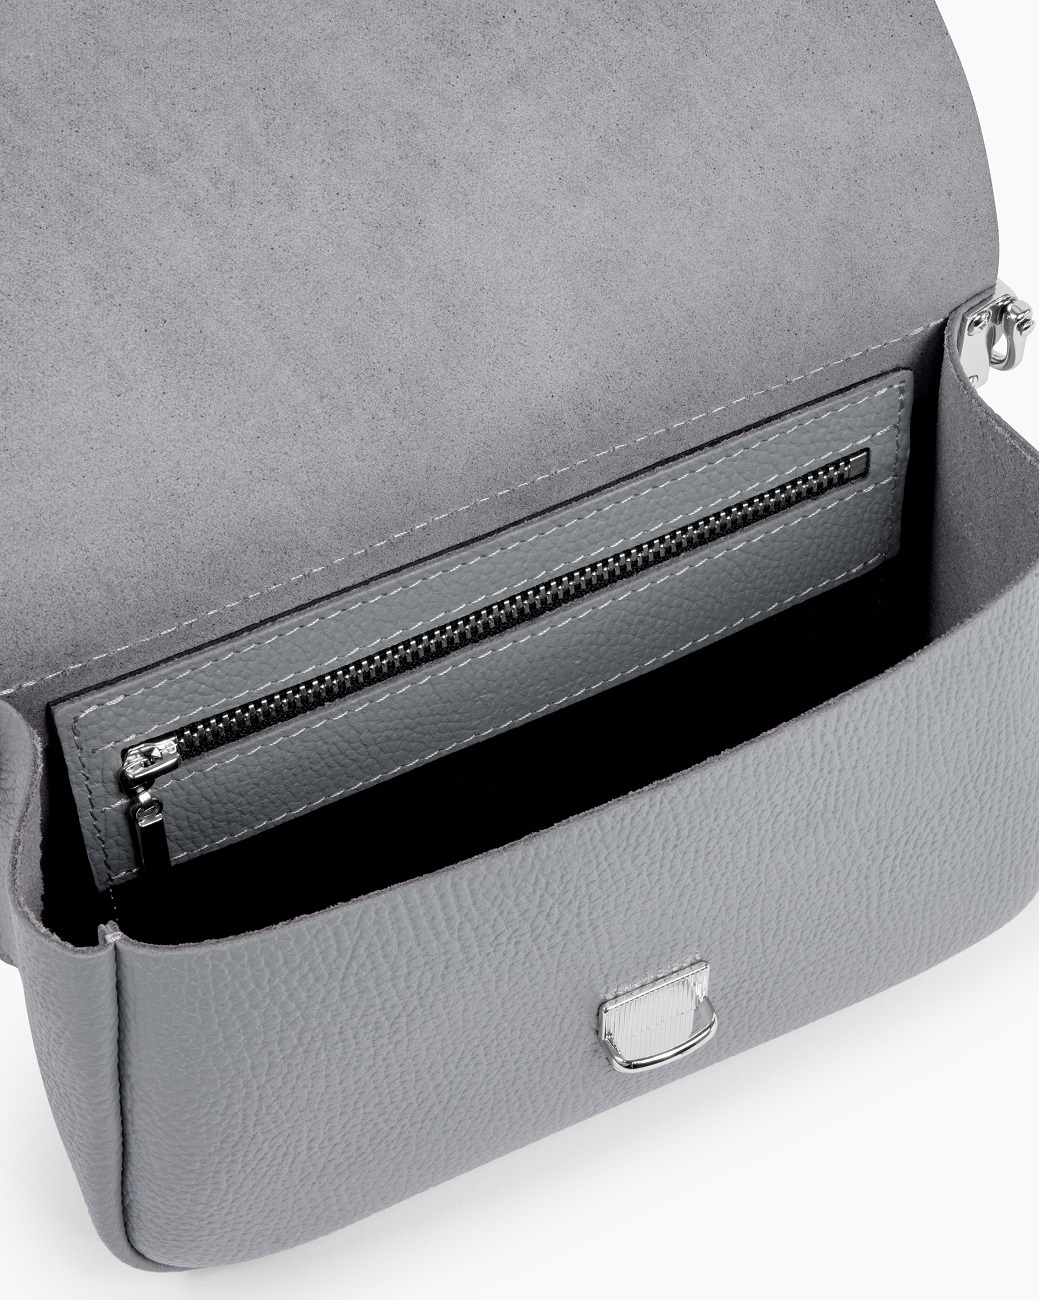 Женская сумка через плечо из натуральной кожи серая A001 grey grain